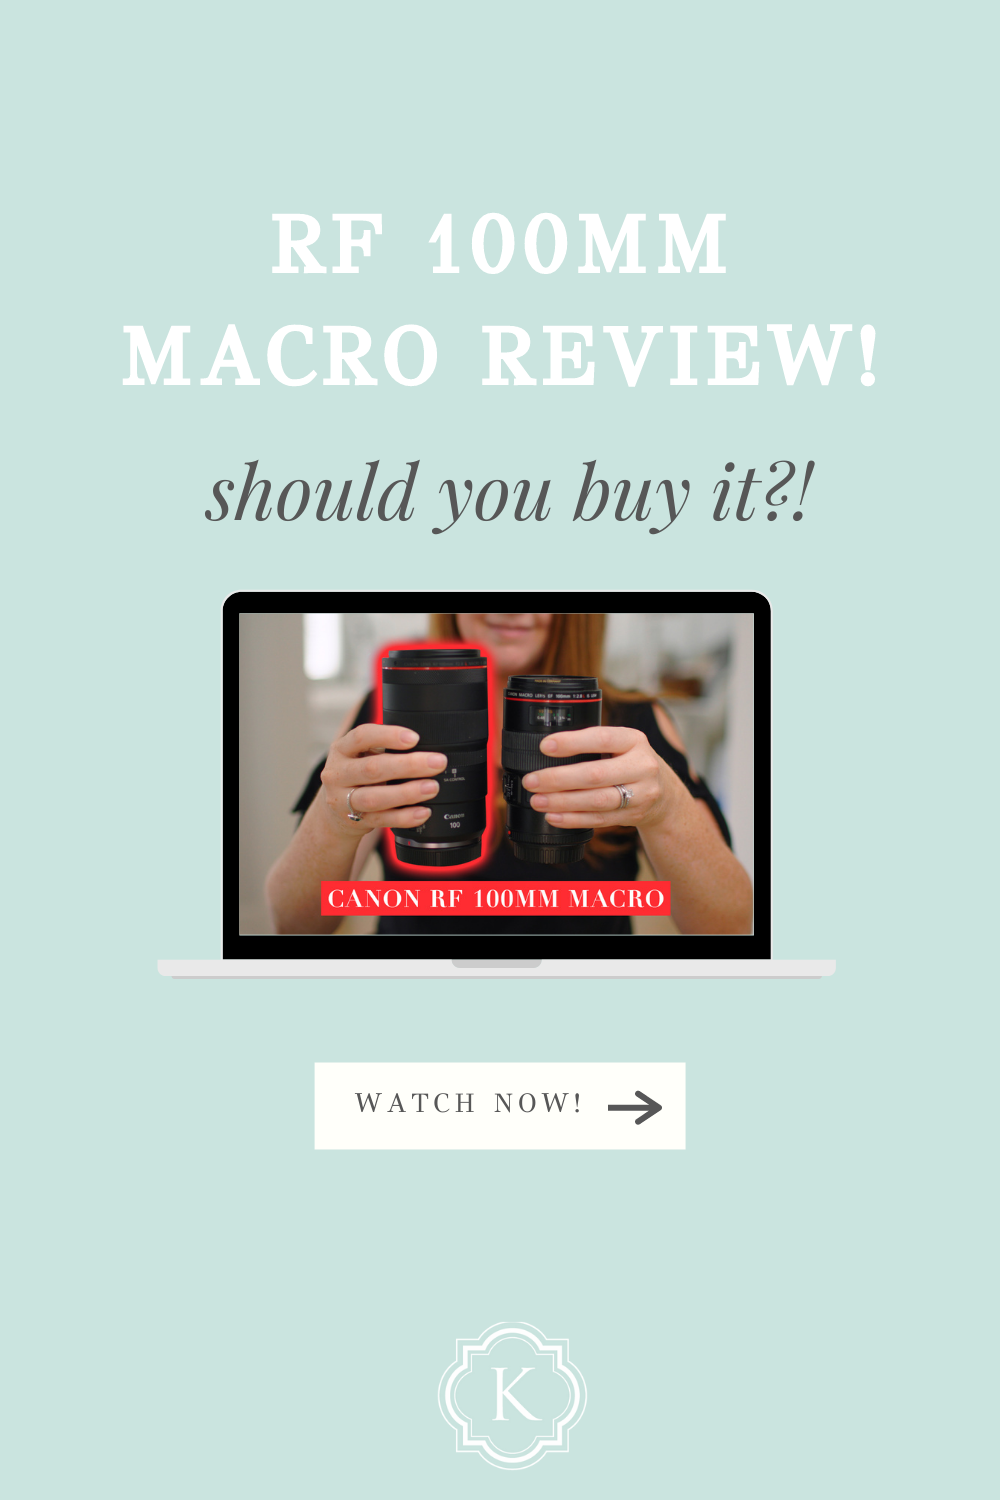 Revue de la macro RF 100MM : devriez-vous l'acheter ?